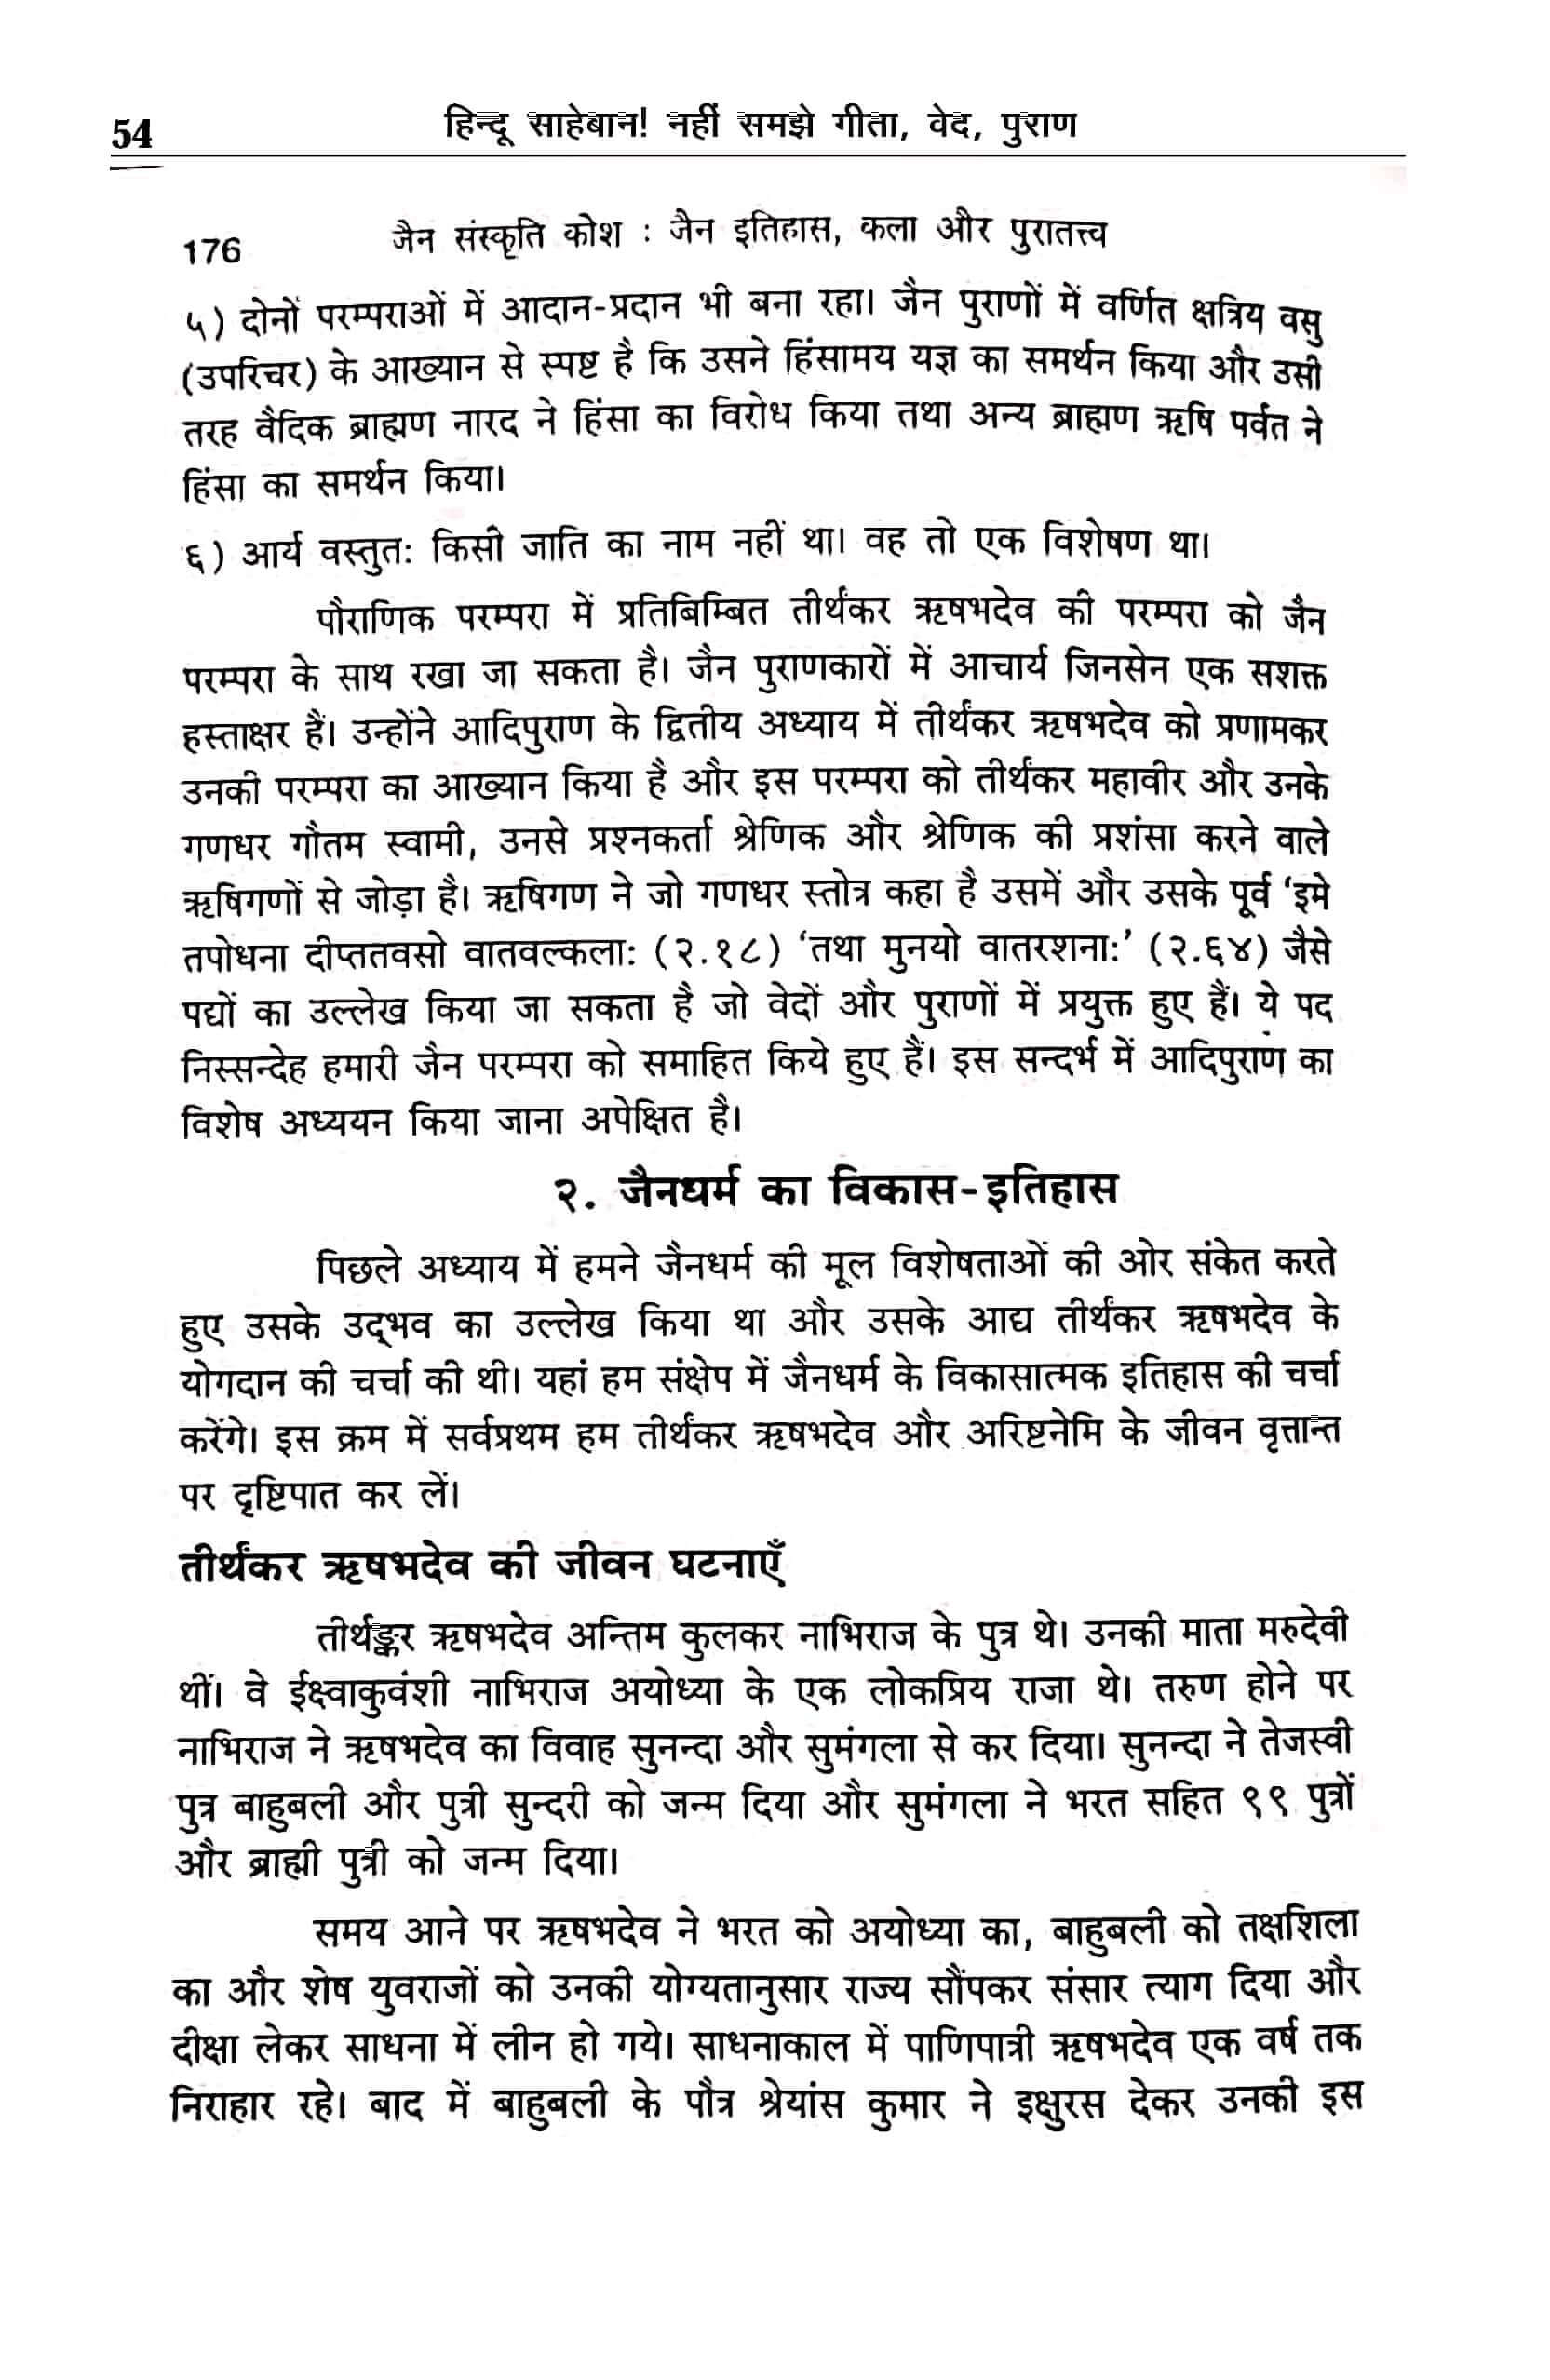 hindu-saheban-nahin-samjhe-gita-ved-puran-page-54